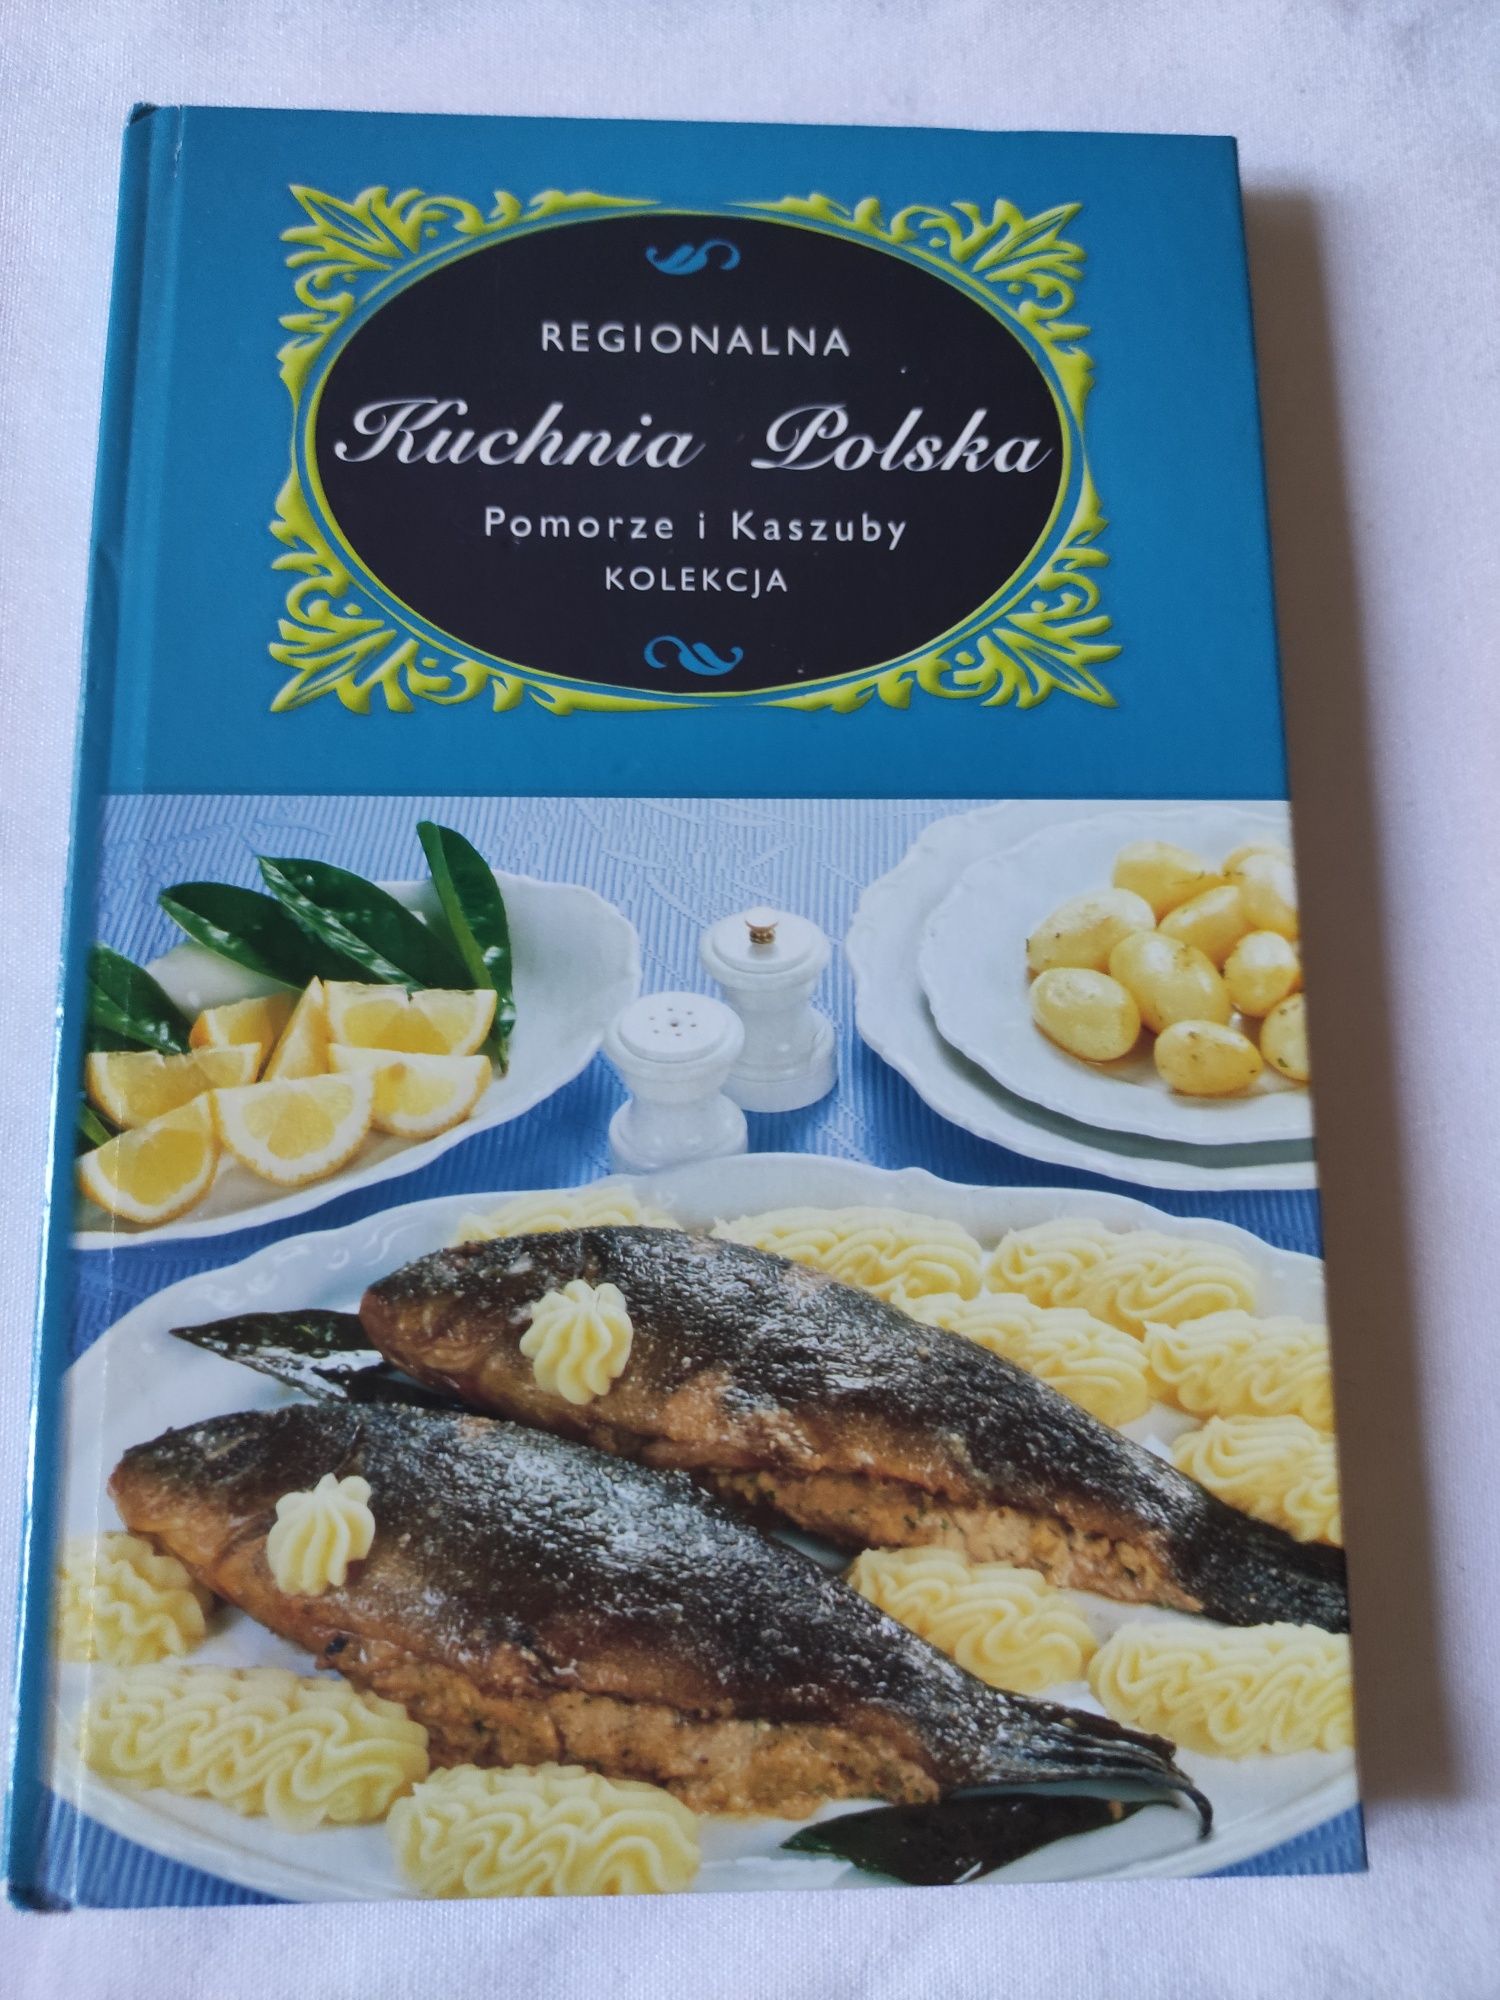 Kuchnia polska Pomorze i Kaszuby książka kucharska przepisy kulinarne